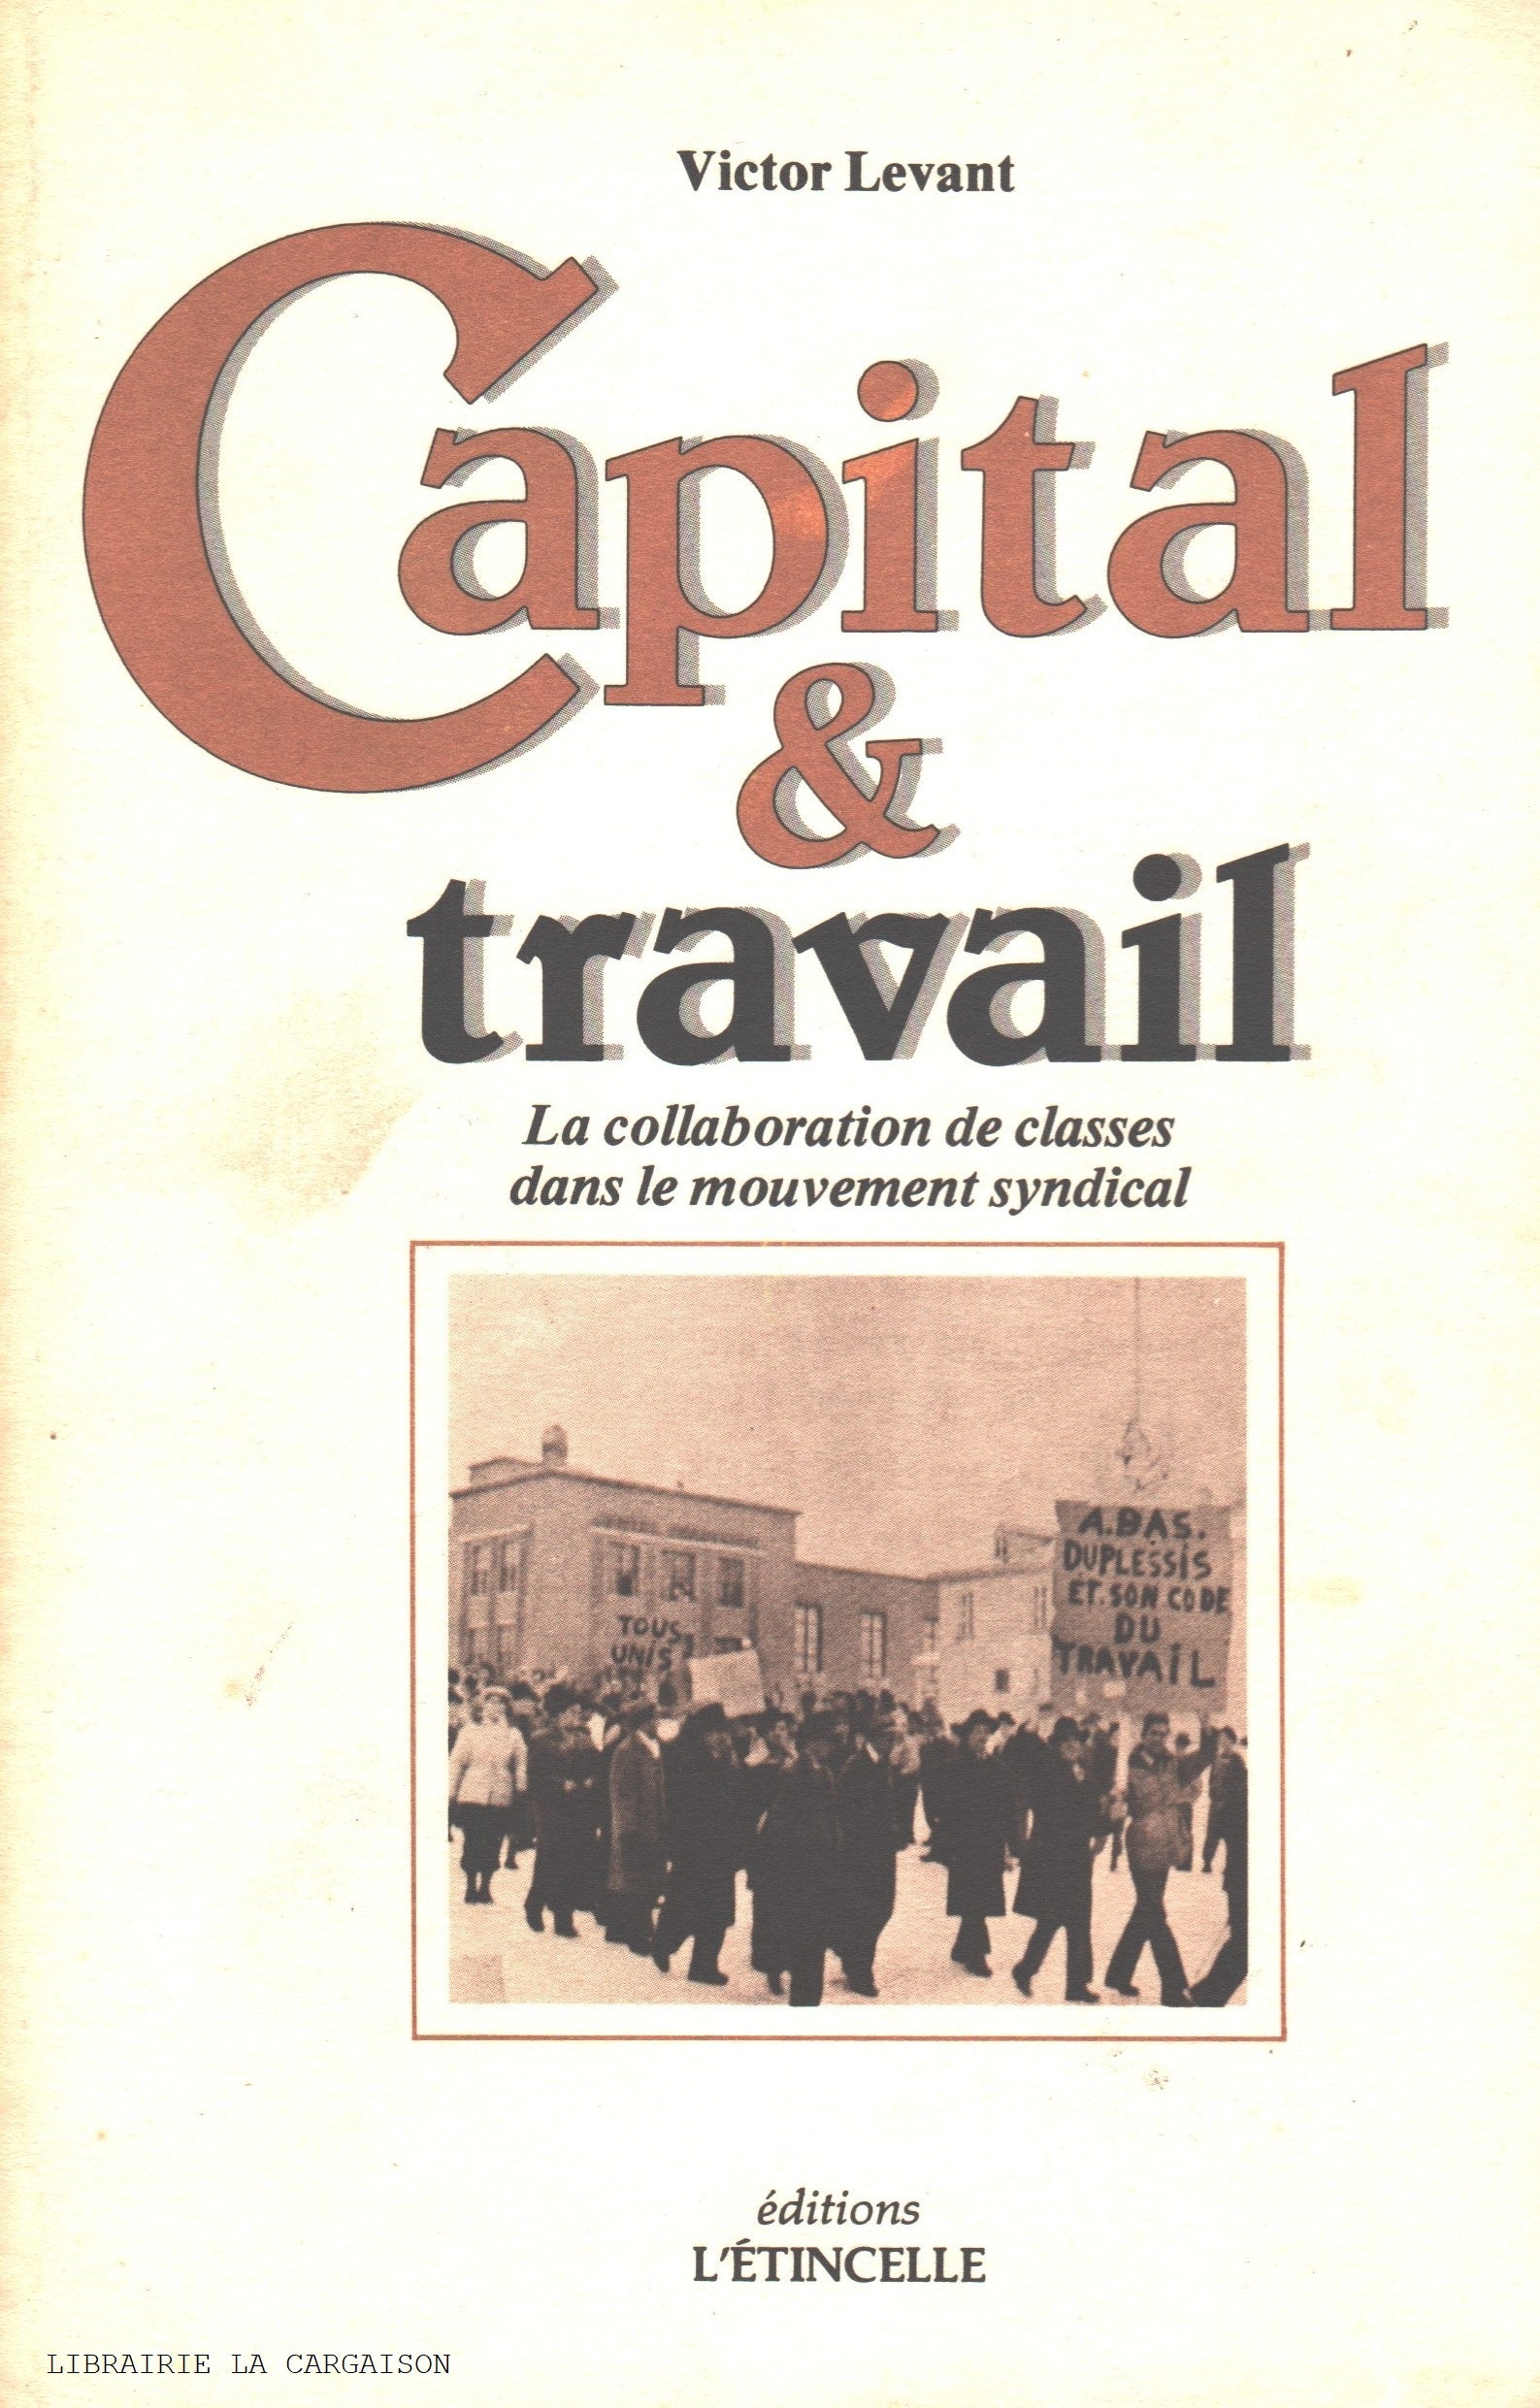 LEVANT, VICTOR. Capital & travail : La collaboration de classes dans le mouvement syndical